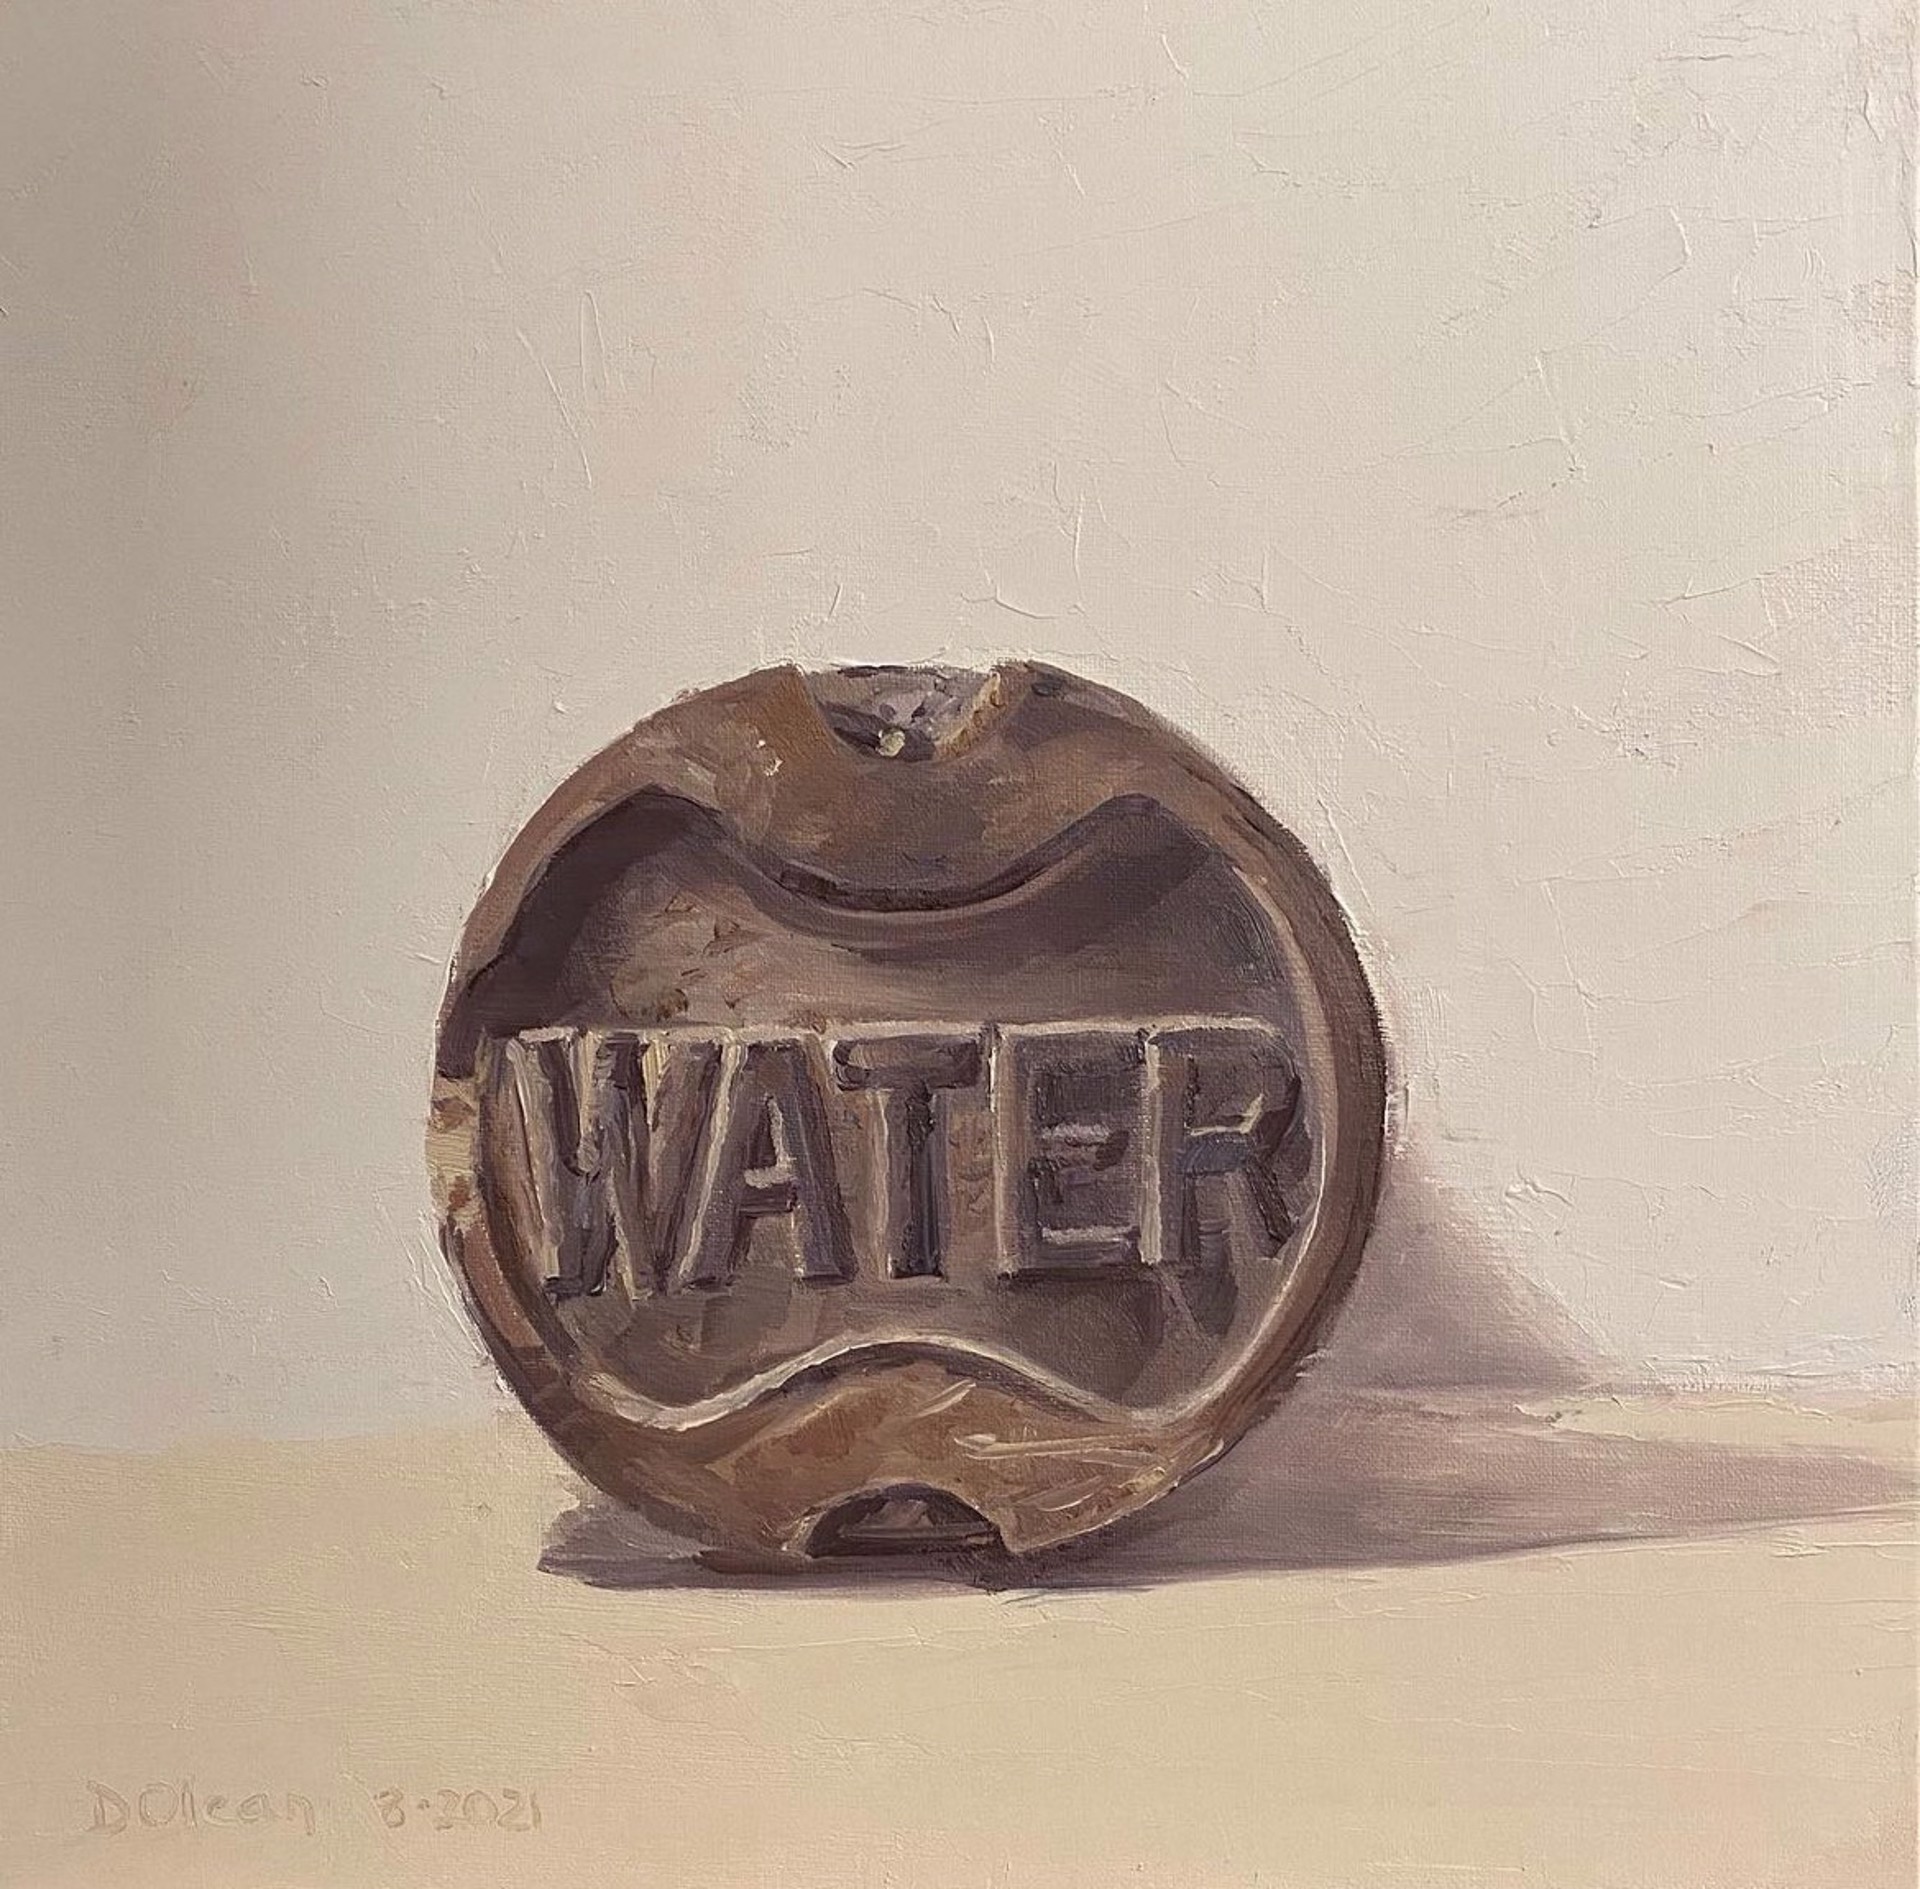 Water by Diane Olean